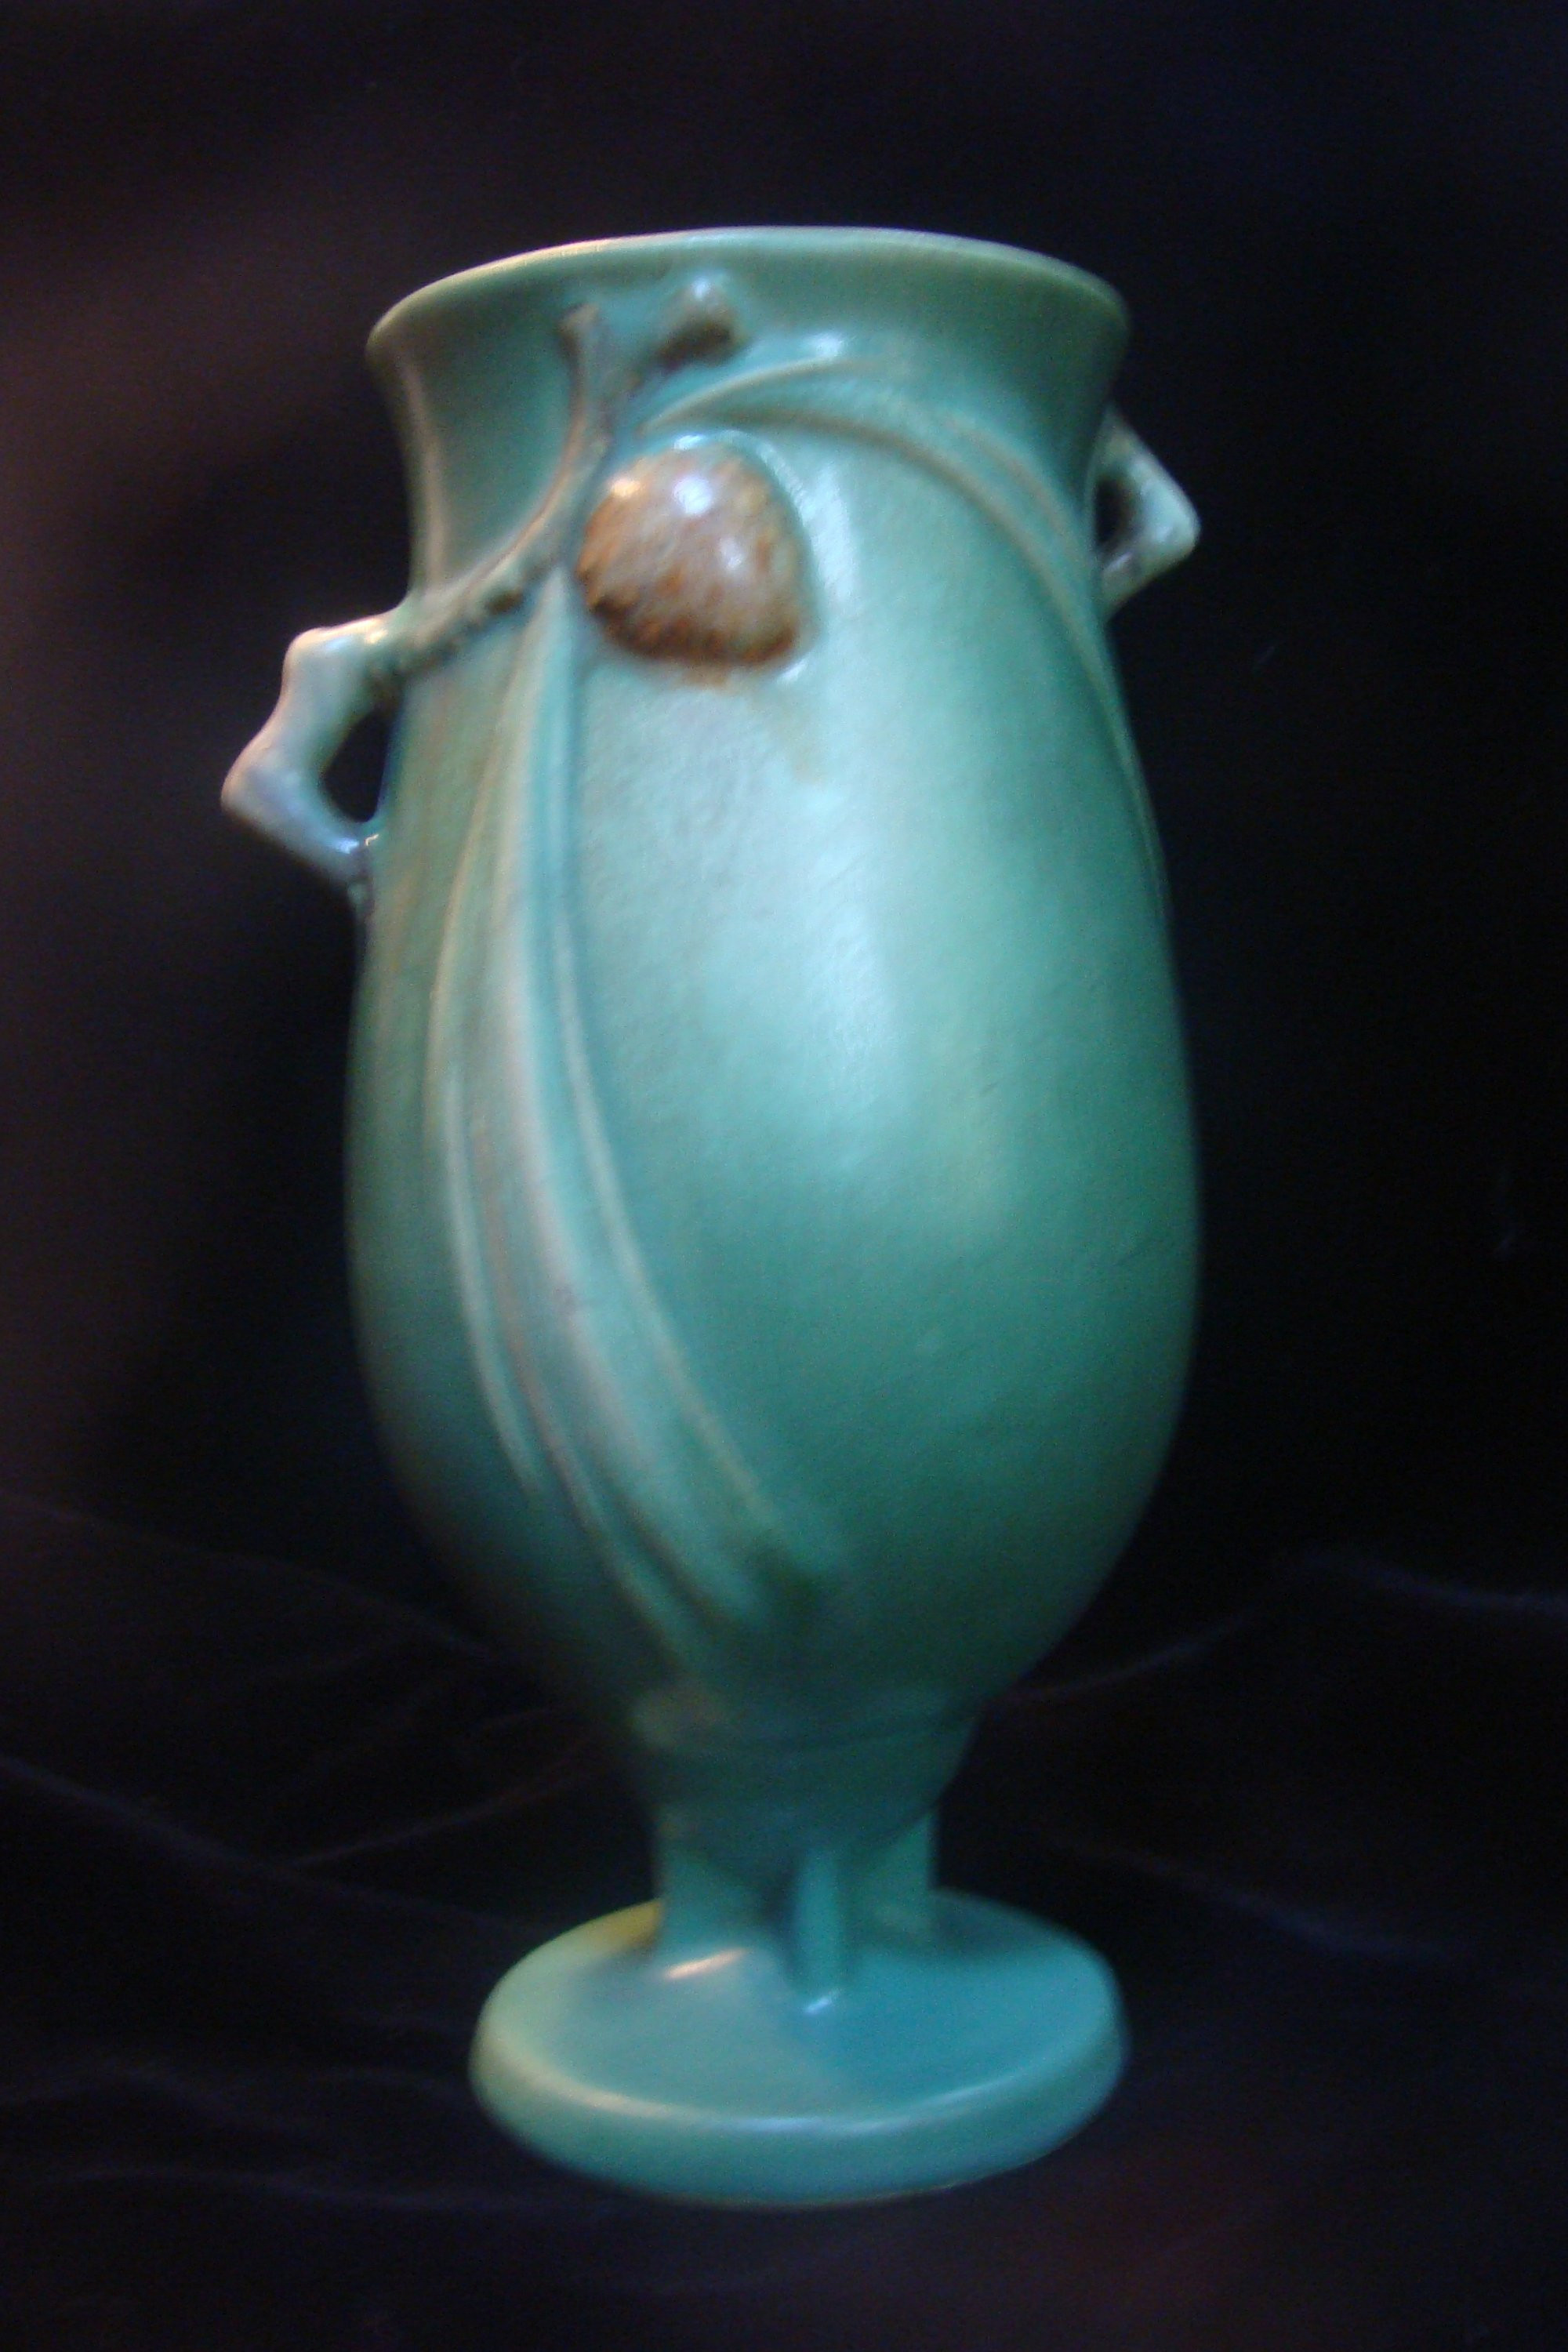 19 Amazing Roseville Pottery Bud Vase 2023 free download roseville pottery bud vase of roseville pine cone vase 1930s etsy with dc29fc294c28ezoom